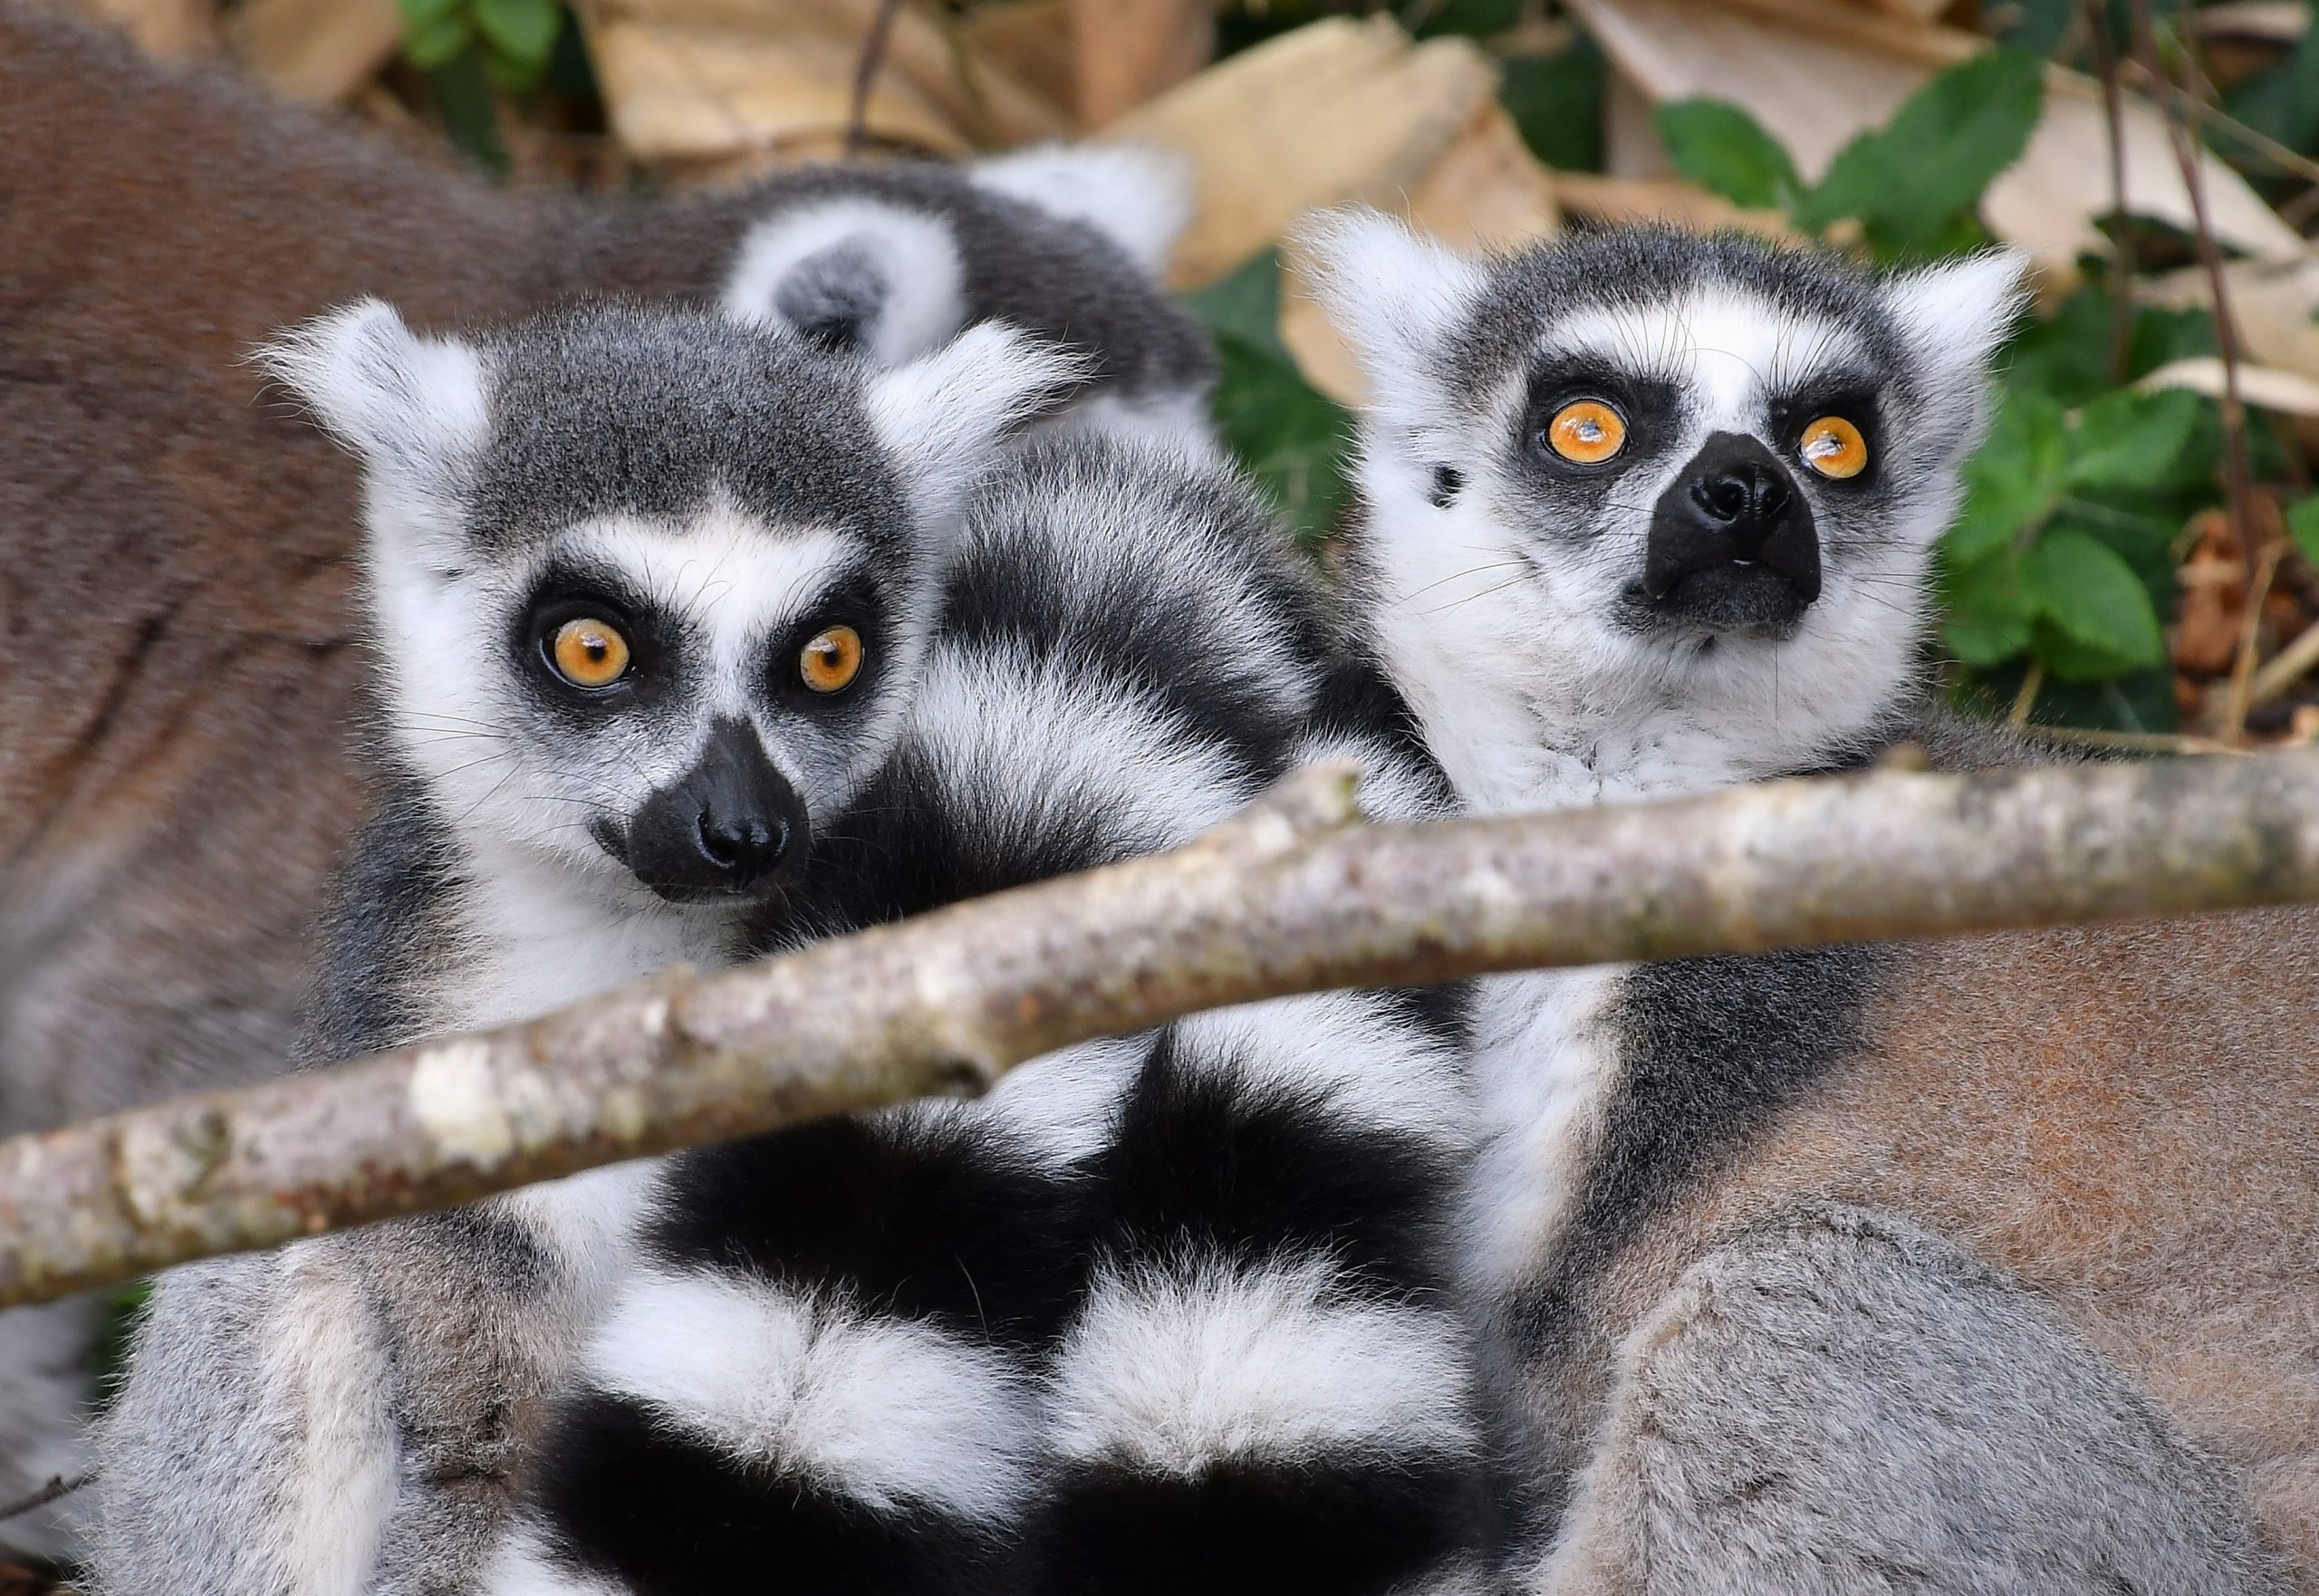 Lemurs Species Under New Threat